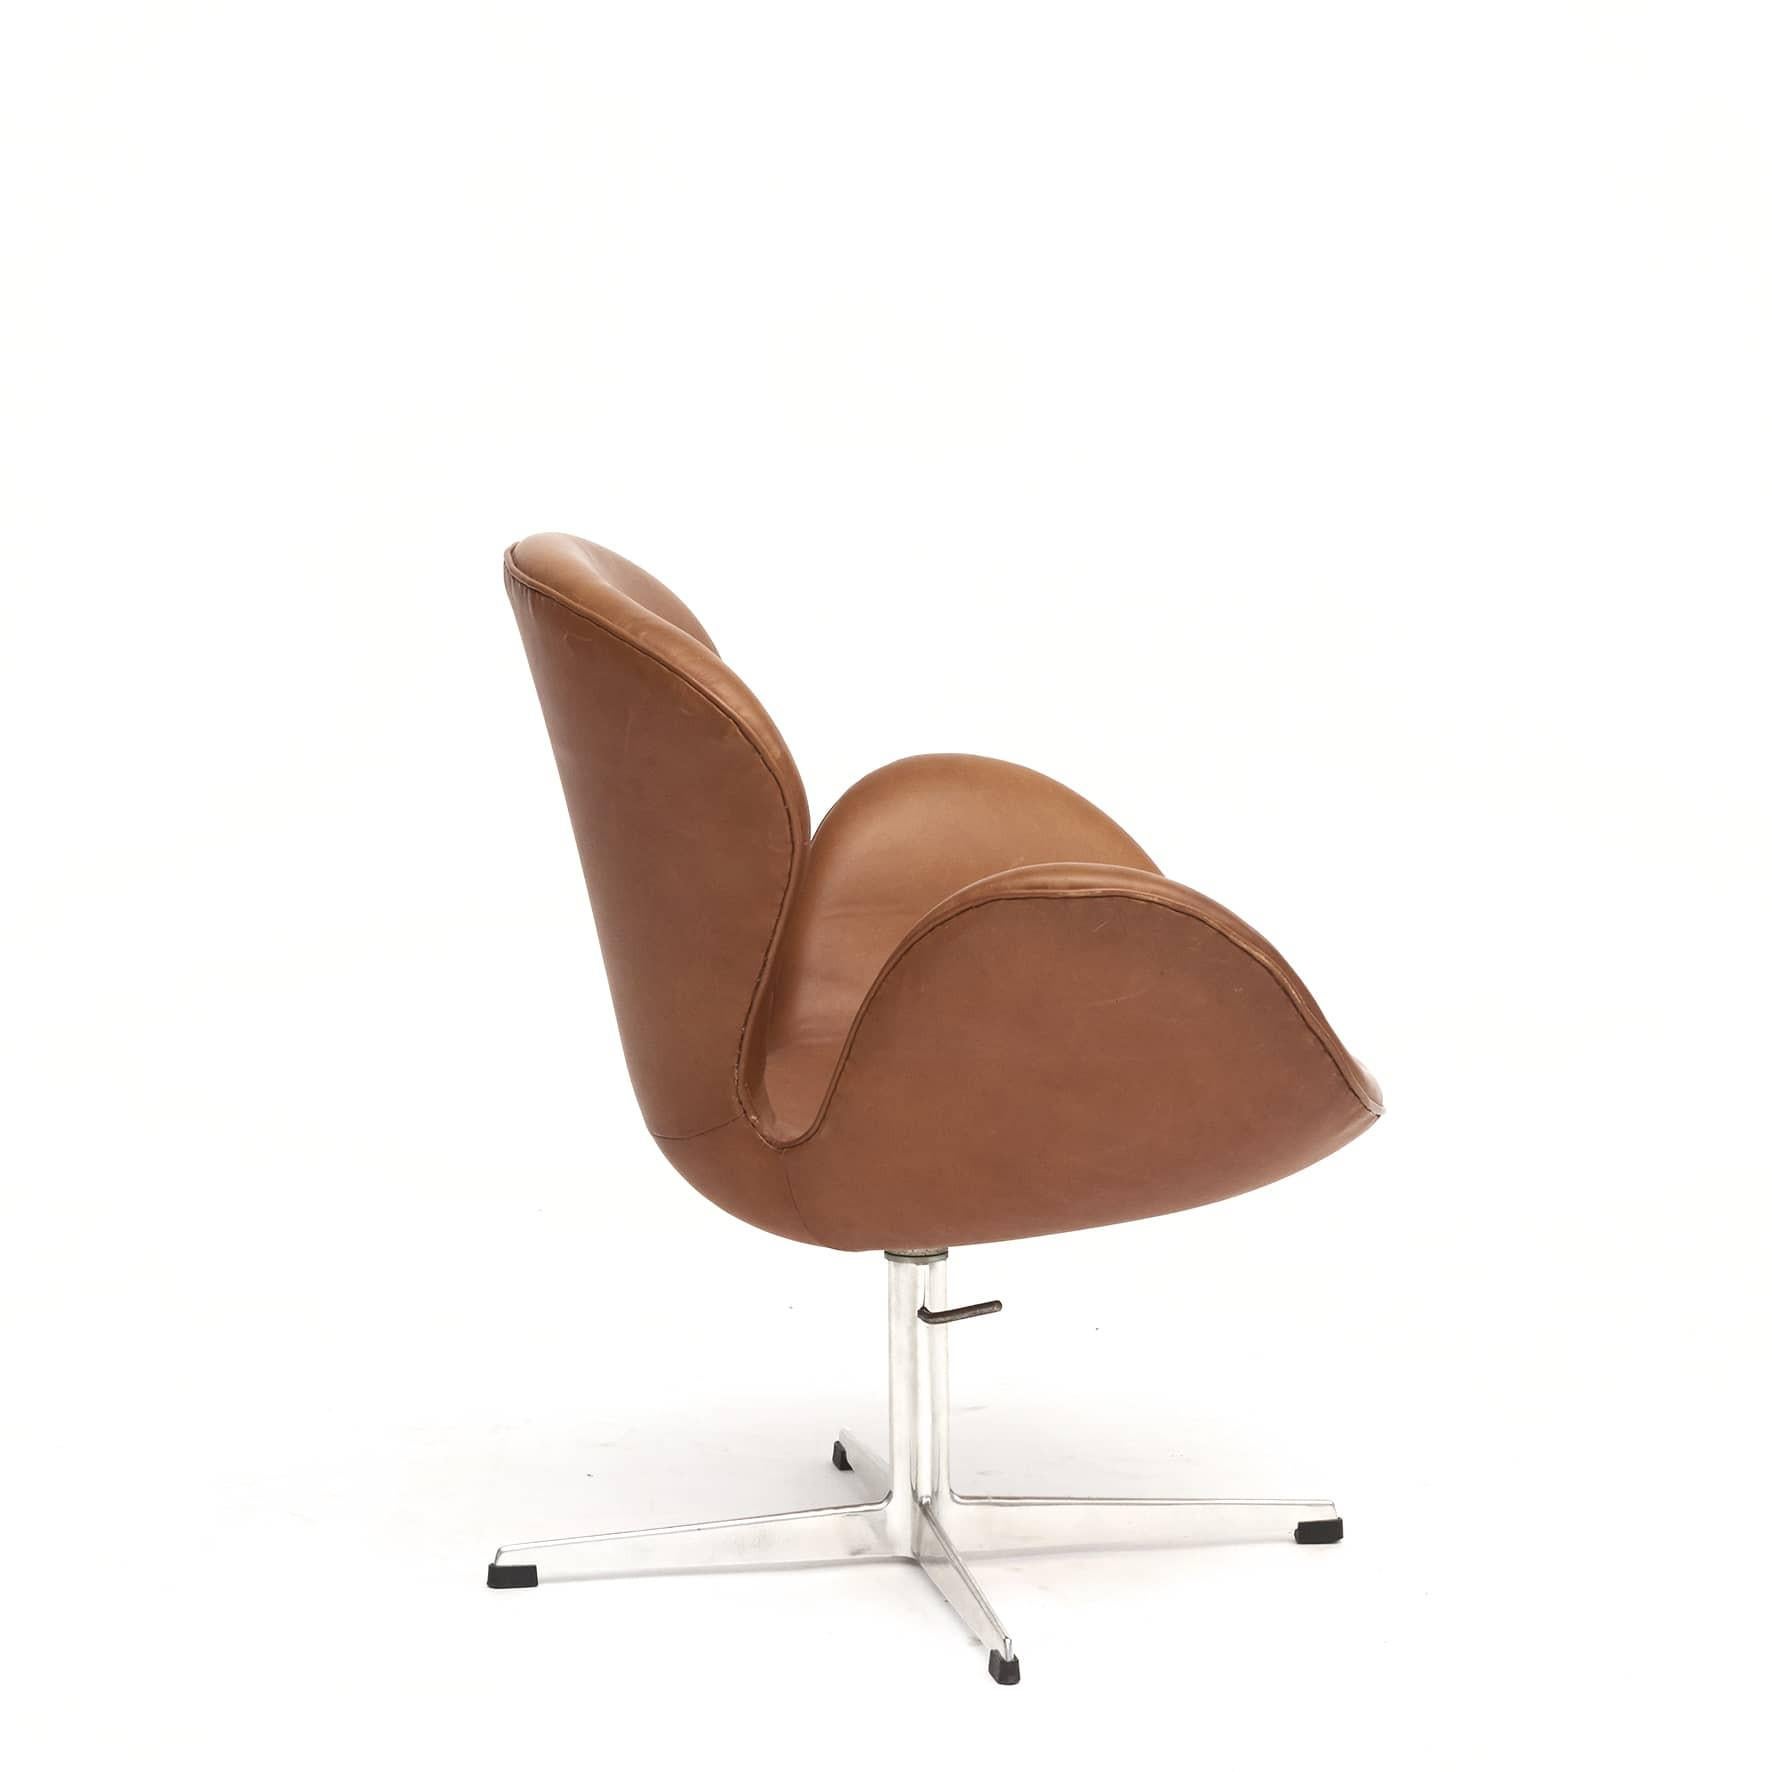 Scandinavian Modern Svanen or Swan Chair by Arne Jacobsen